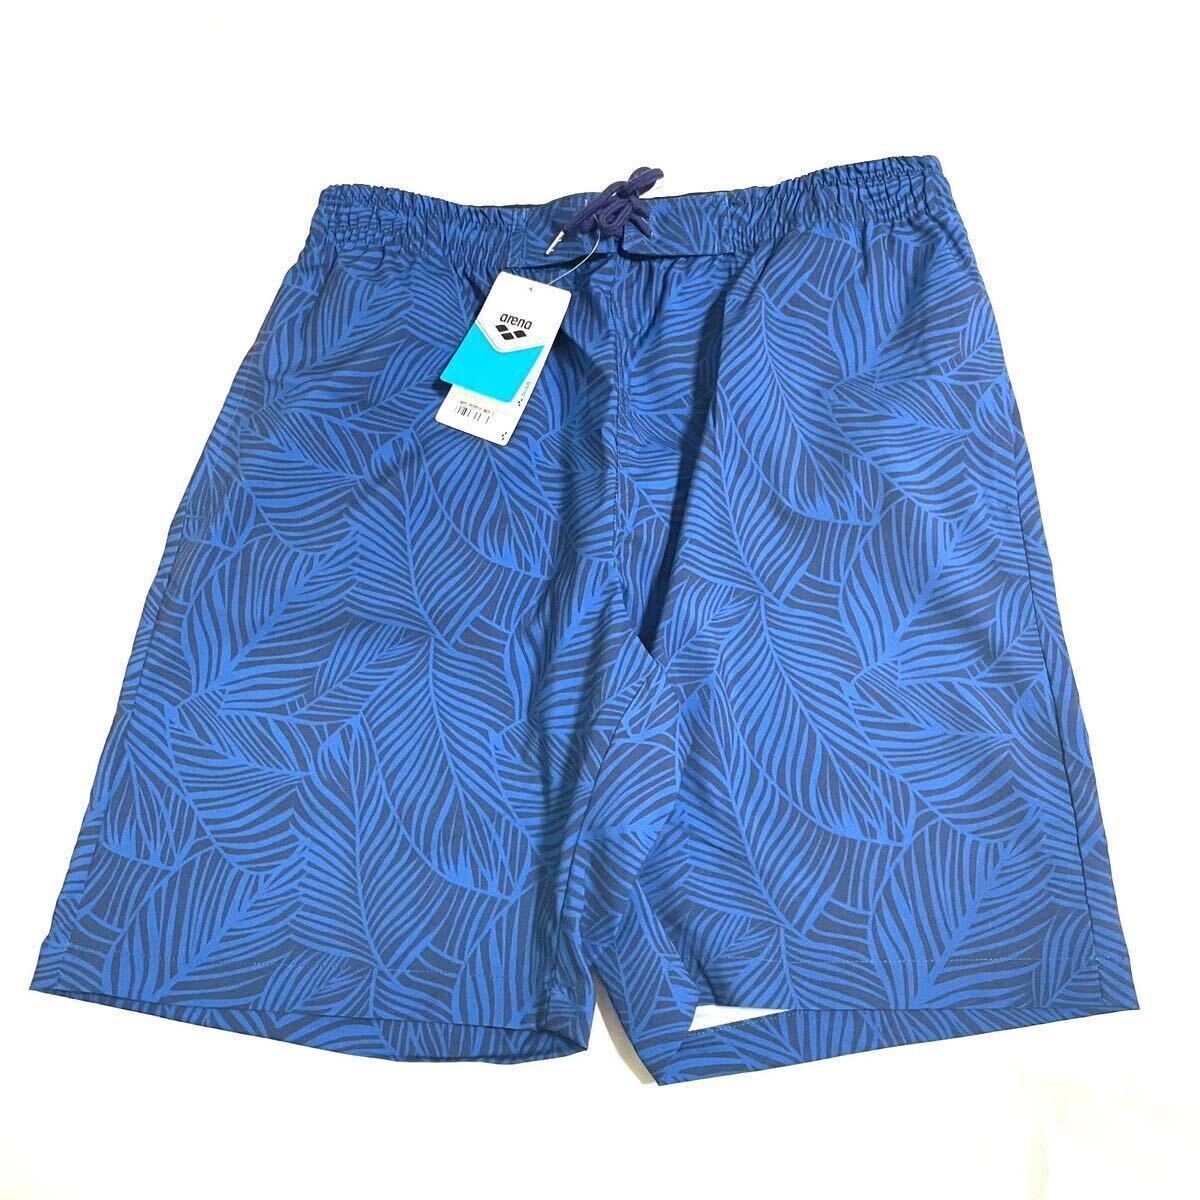 *H548 новый товар [ мужской L] общий рисунок темно-синий ARENA BEACHSIDE LIFESTYLE шорты 7inch шорты пляж боковой жизнь стиль 